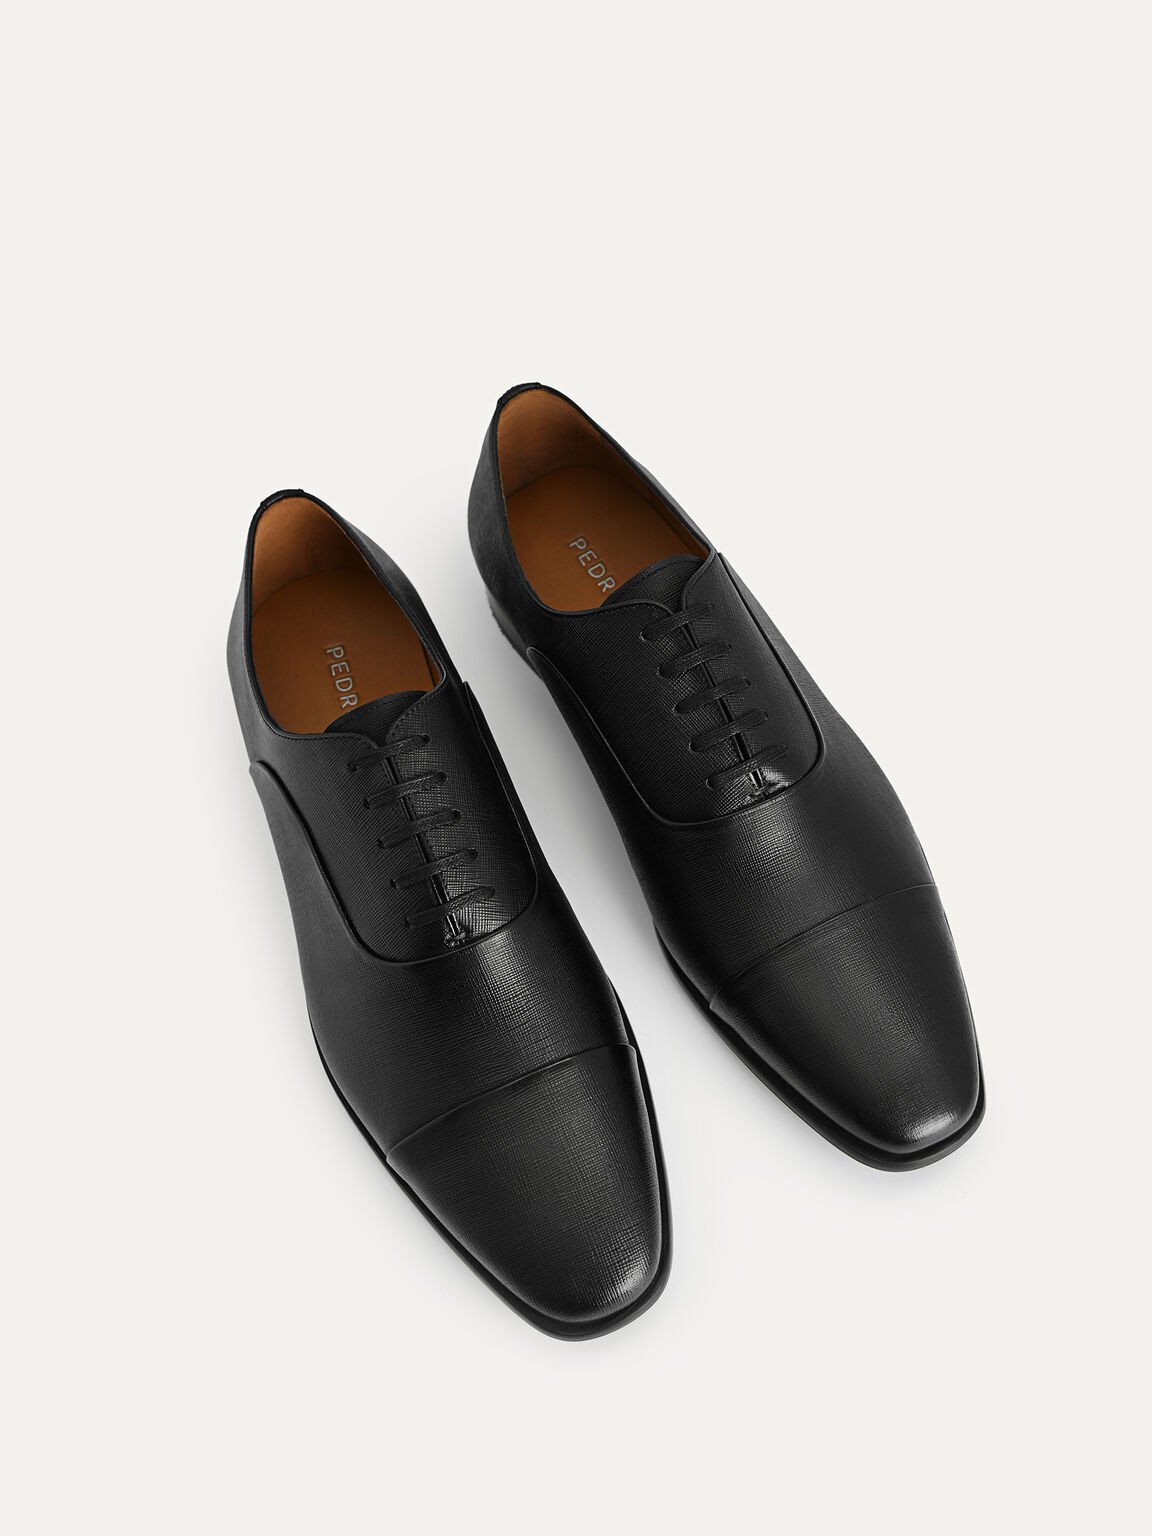 紋理皮革牛津鞋, 黑色, hi-res